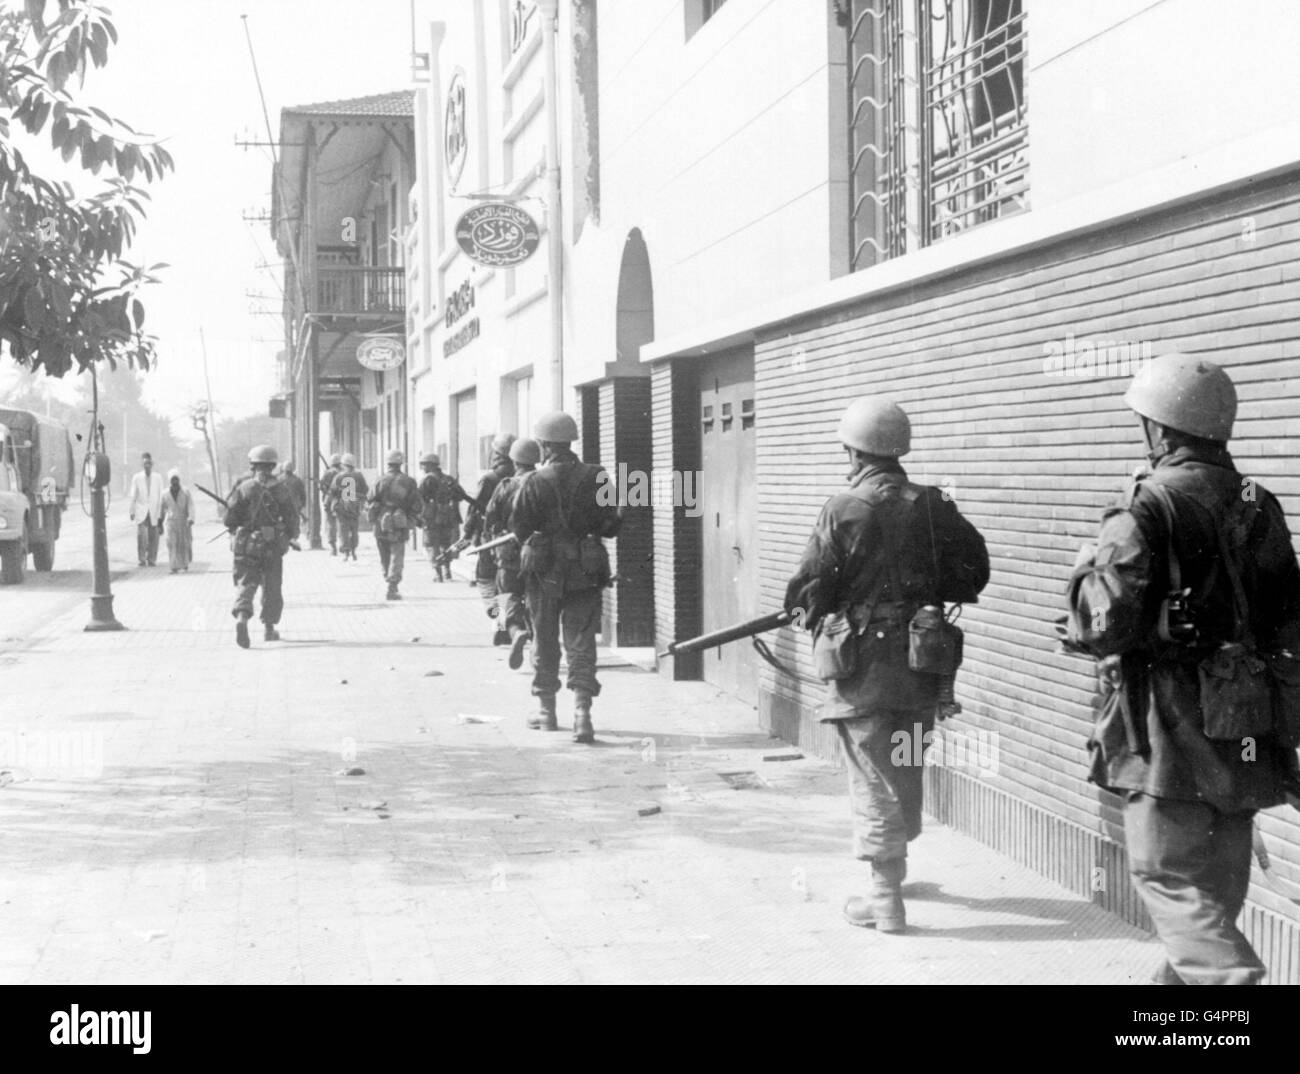 SUEZ 1956: Strung fuori vicino agli edifici, una pattuglia alleata si muove attraverso una strada quasi deserta in Port Said, città chiave all'estremità settentrionale del canale di Suez, tenuto dalle truppe britanniche e francesi. Foto Stock